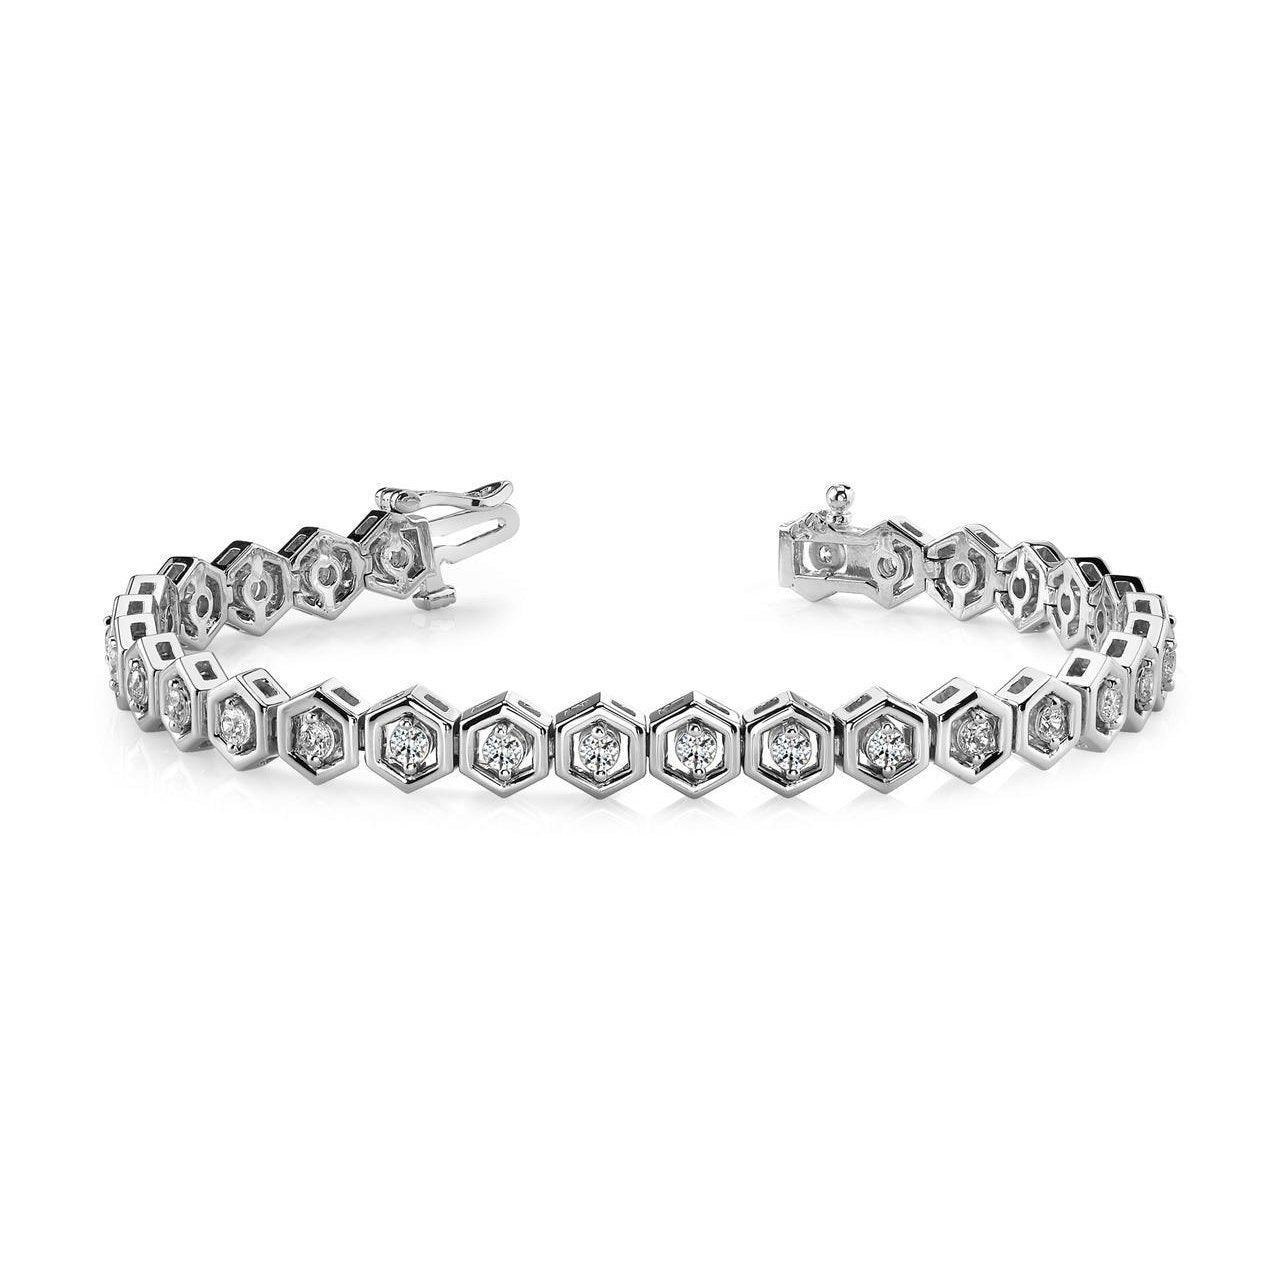 Wunderschönes, zweipoliges, rundes Echt Diamant-Armband mit 5 Karat Hexagon-Gliedern